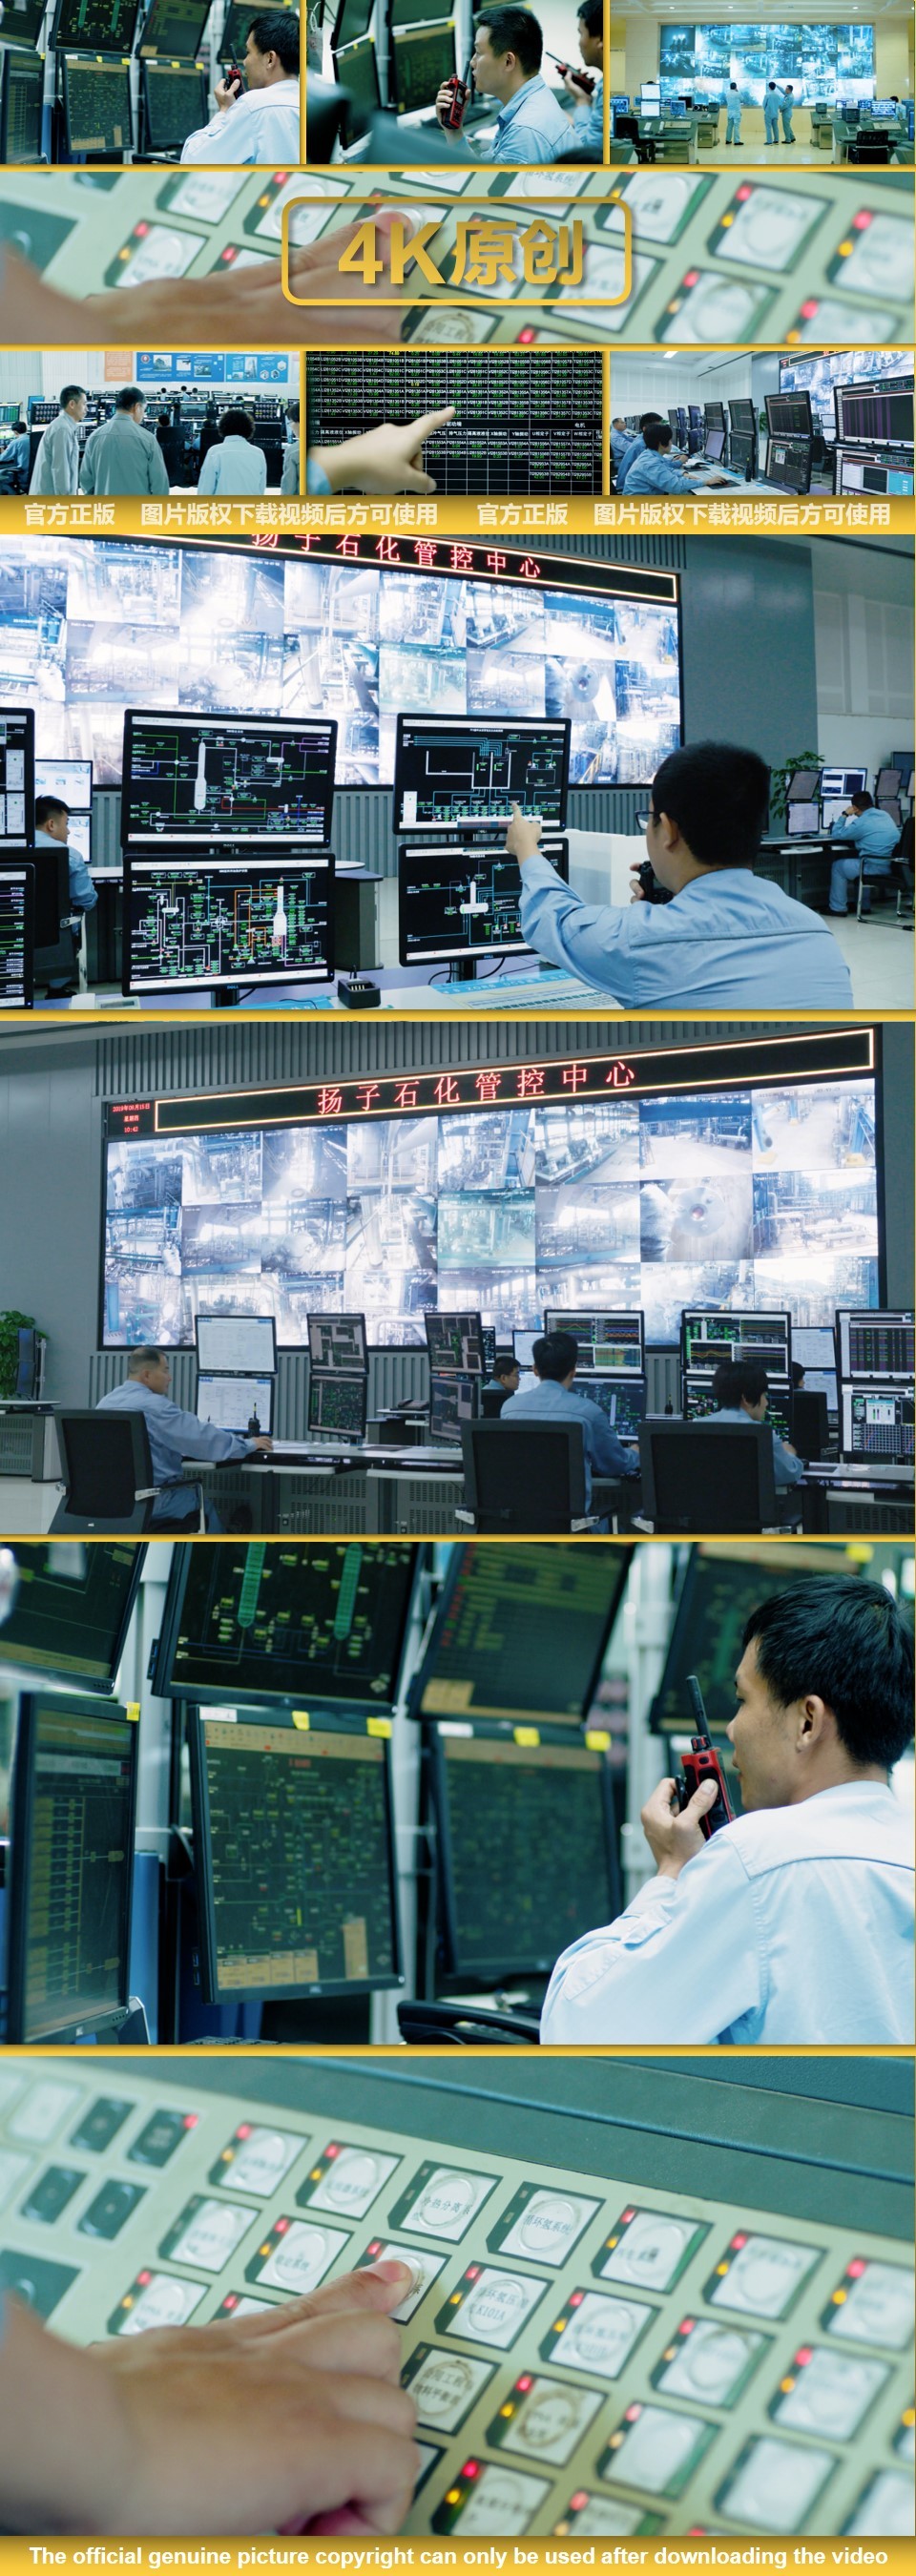 监控室 控制室 控制中心 数据大屏幕